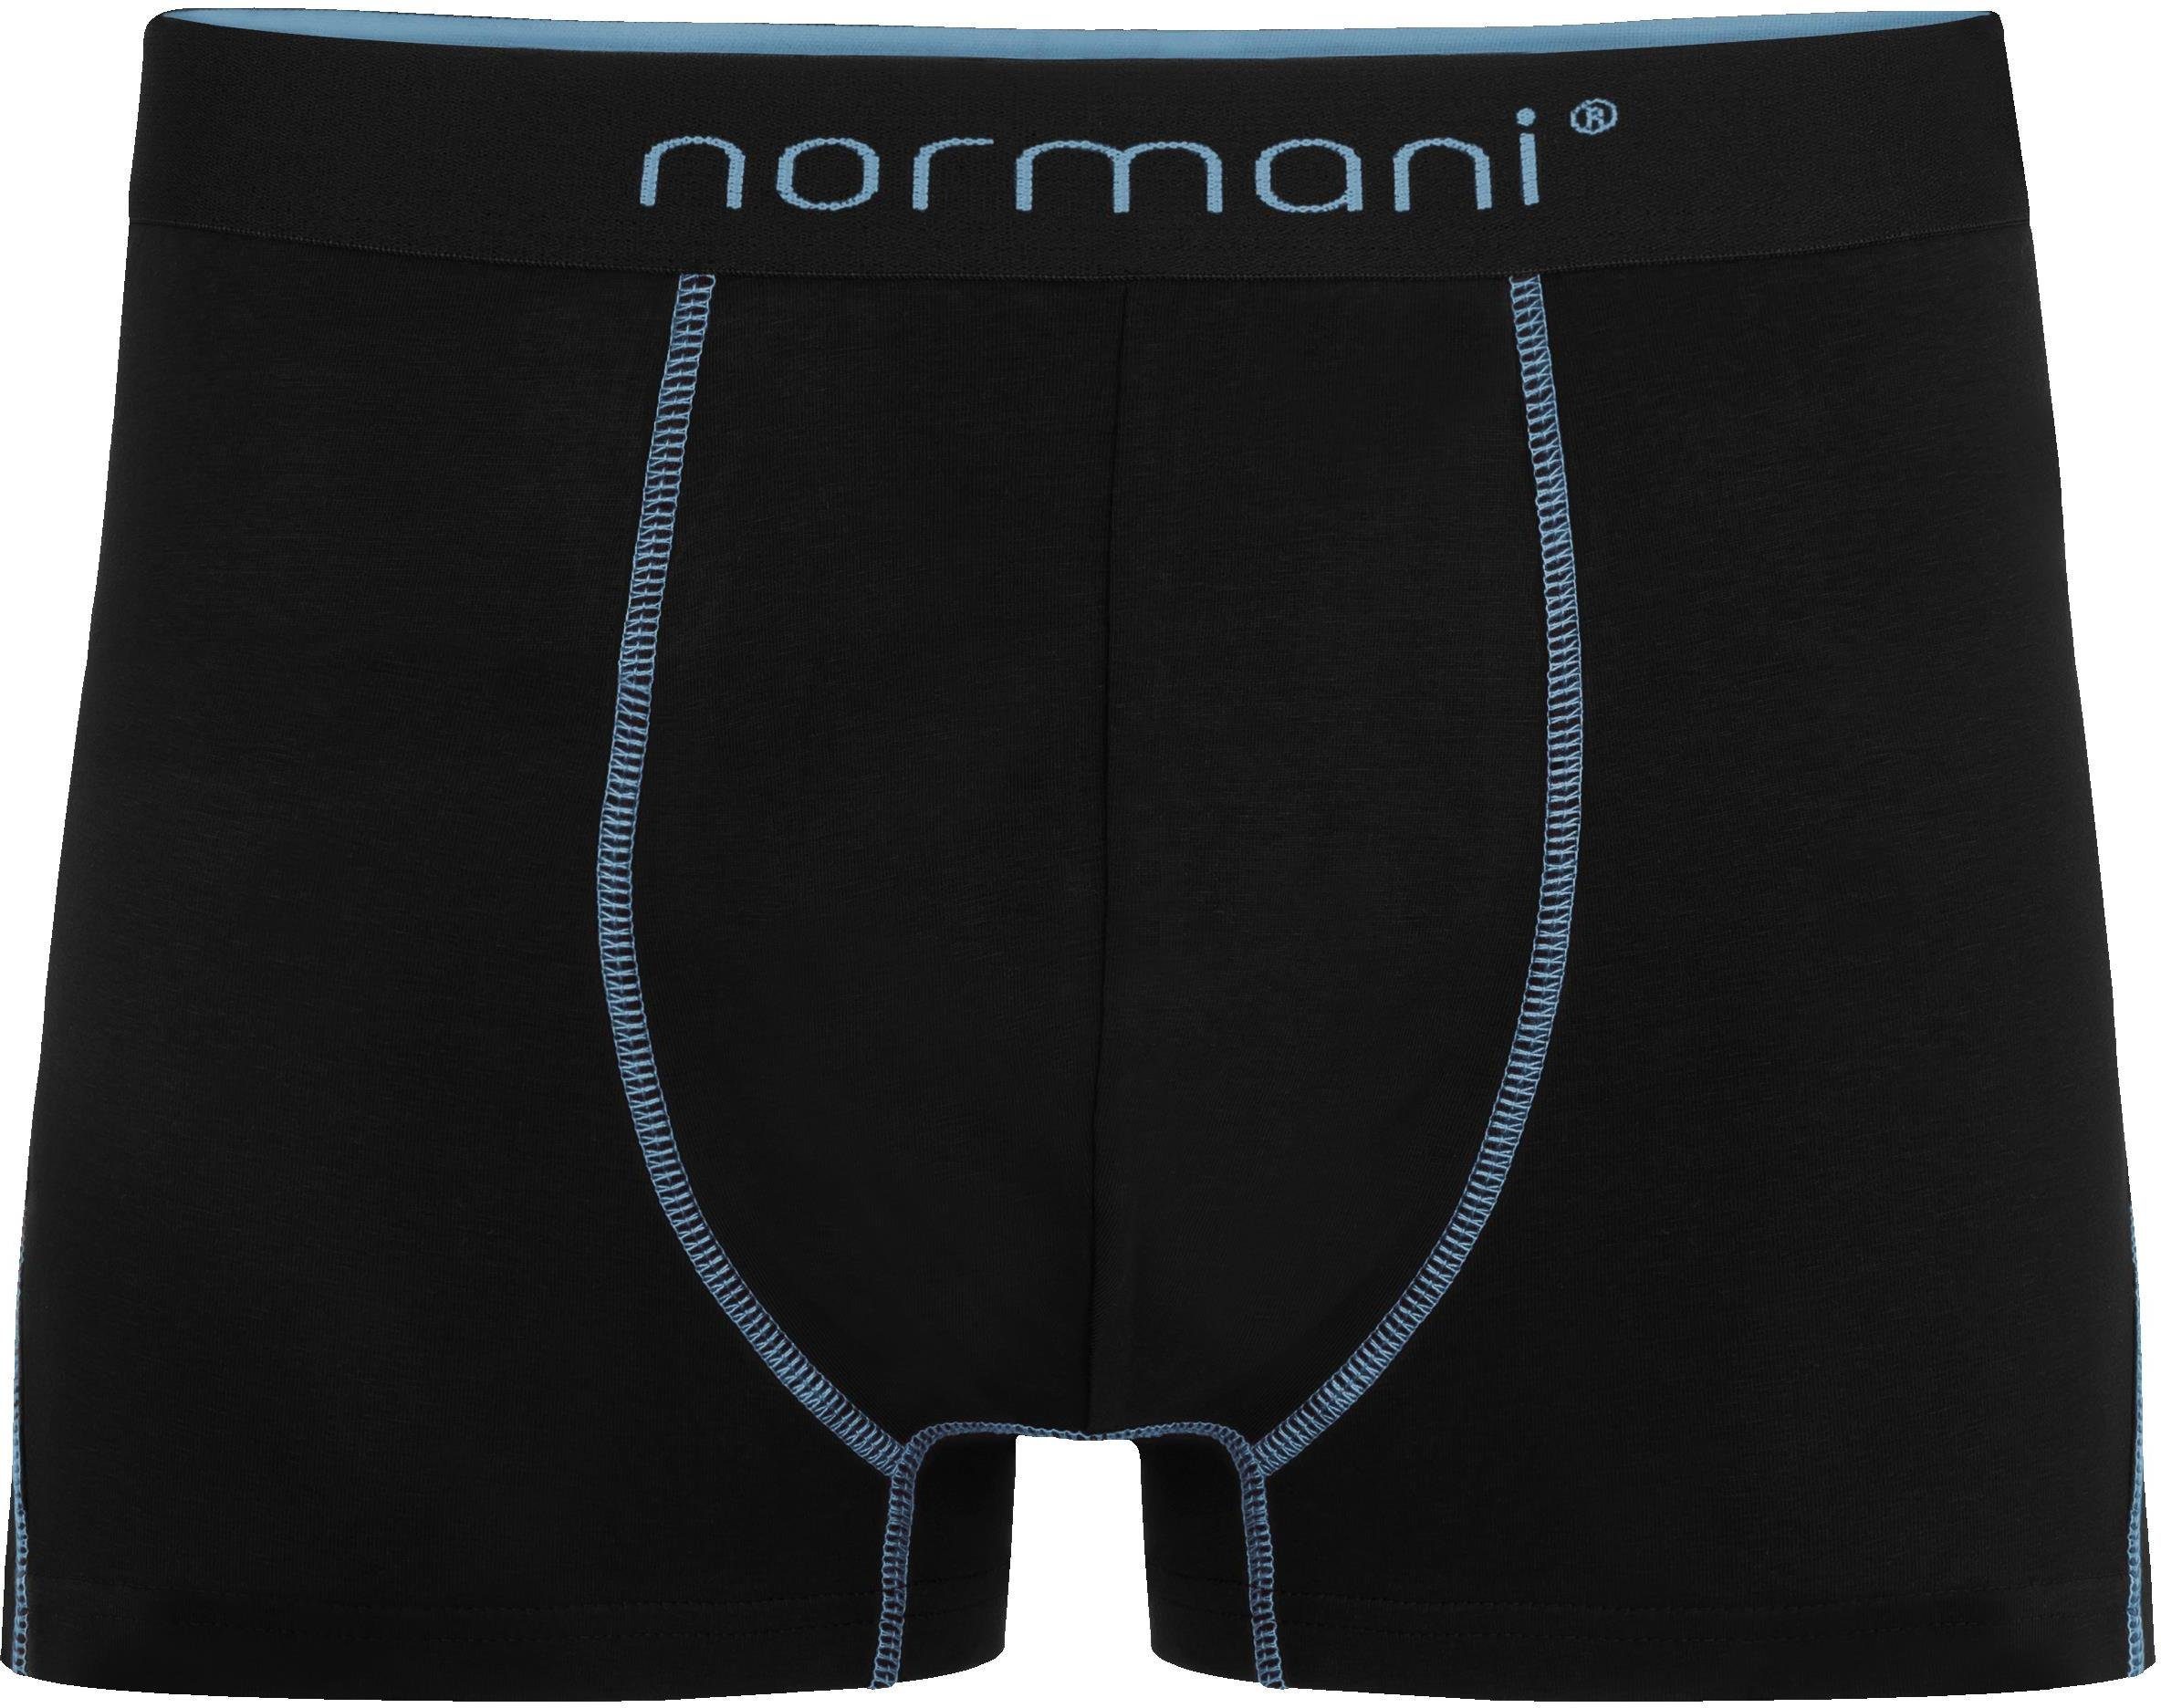 normani Boxershorts 2 Herren Boxershorts für aus Baumwolle Stanley atmungsaktiver Unterhose Hellblau Männer